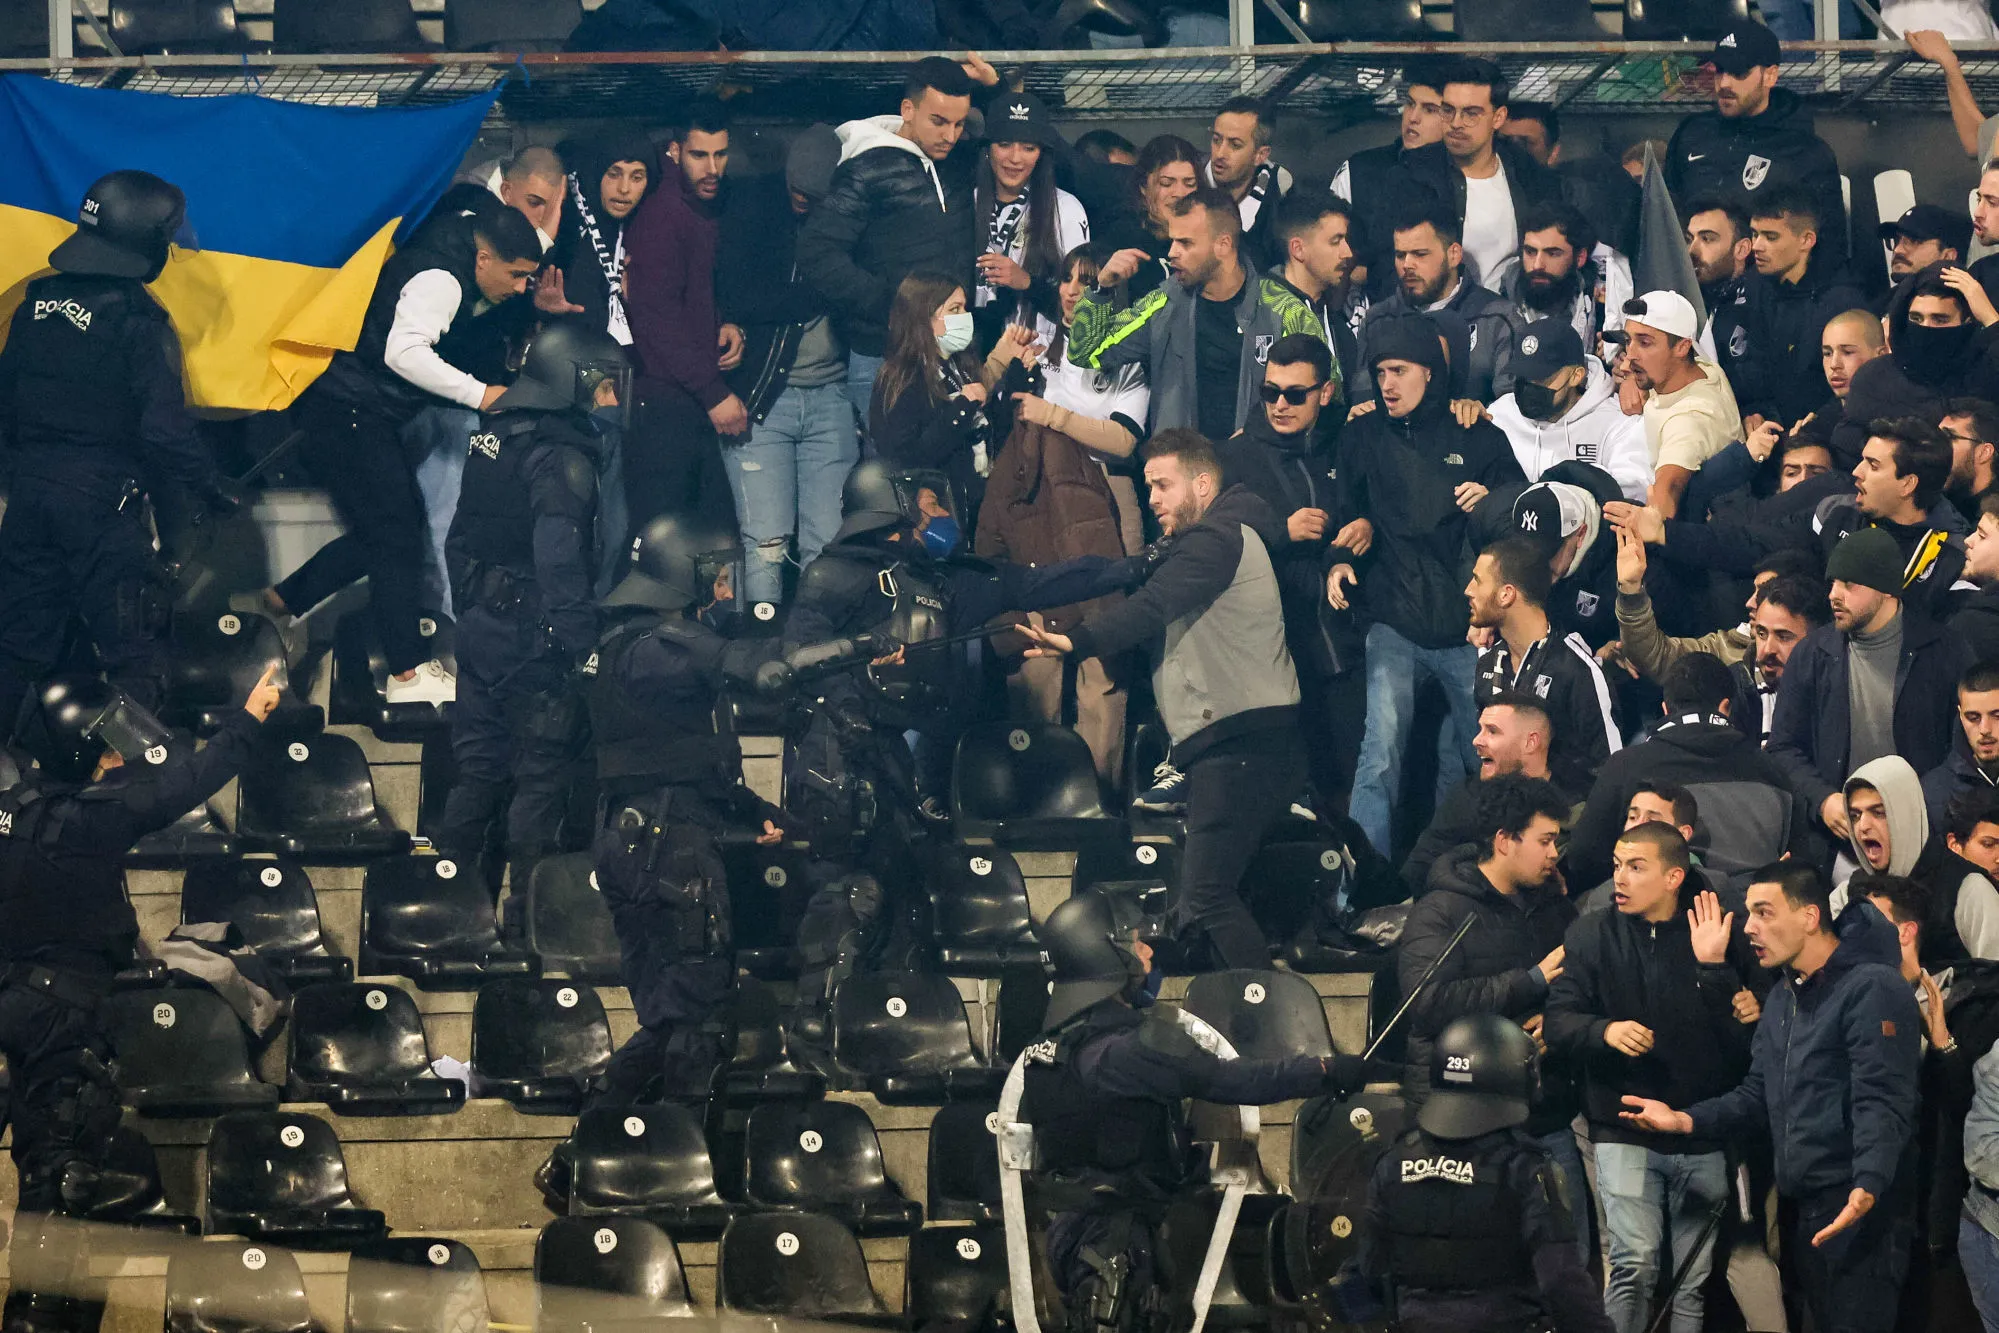 Le match entre Vitória et le Sporting interrompu pour des scènes de violence en tribunes